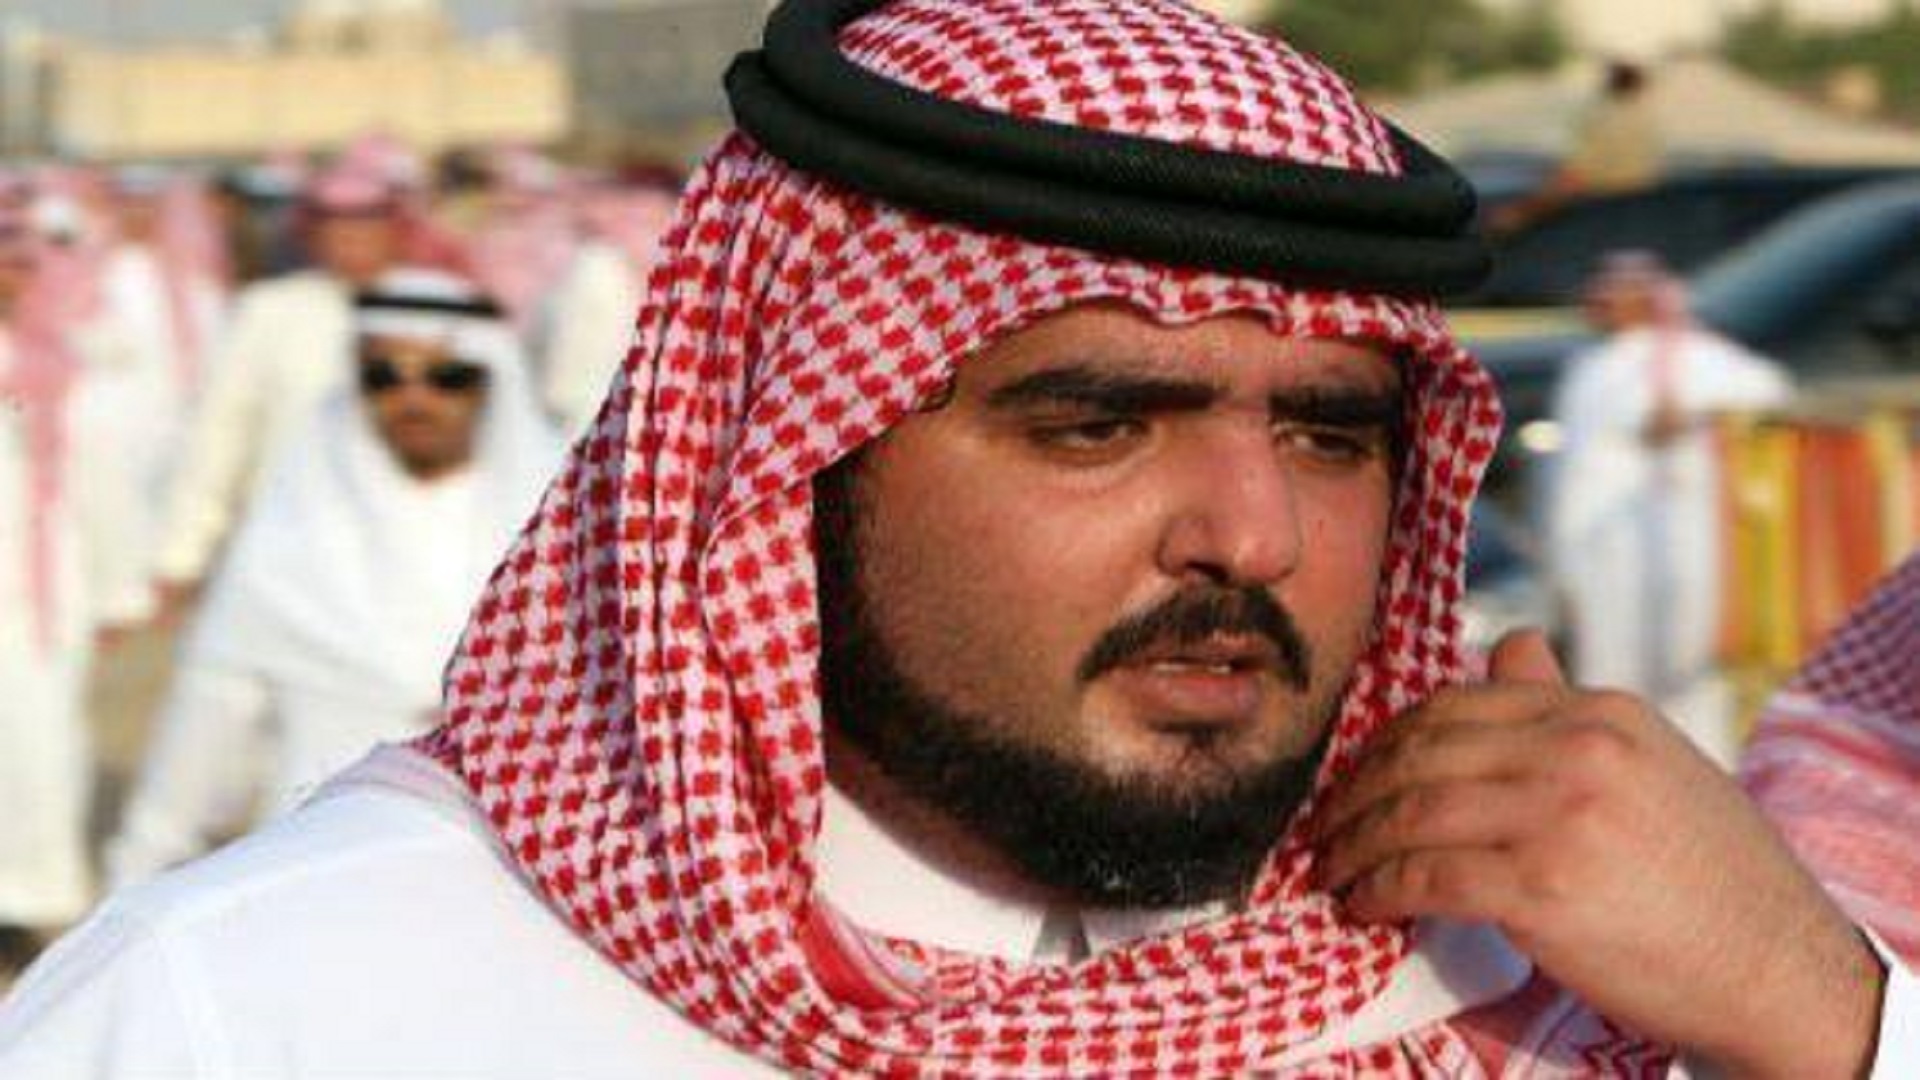 صورة كم عدد ابناء الامير عبدالعزيز بن فهد آل سعود